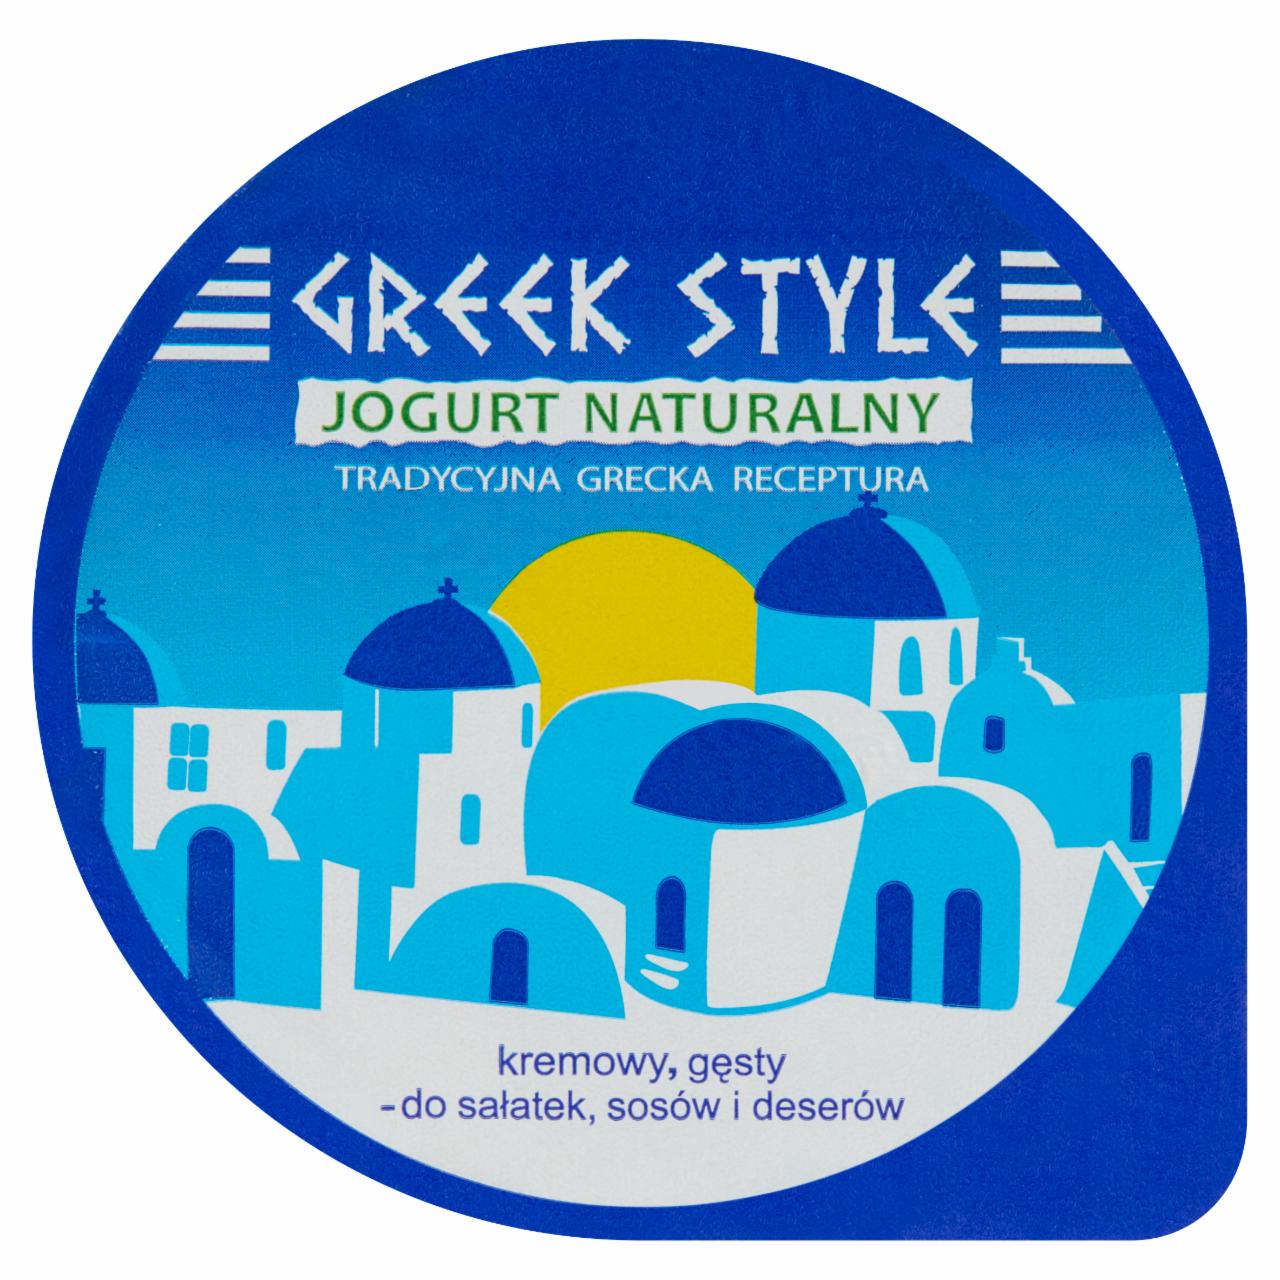 Zdjęcia - Greek Style Naturalny jogurt gęsty 180 g